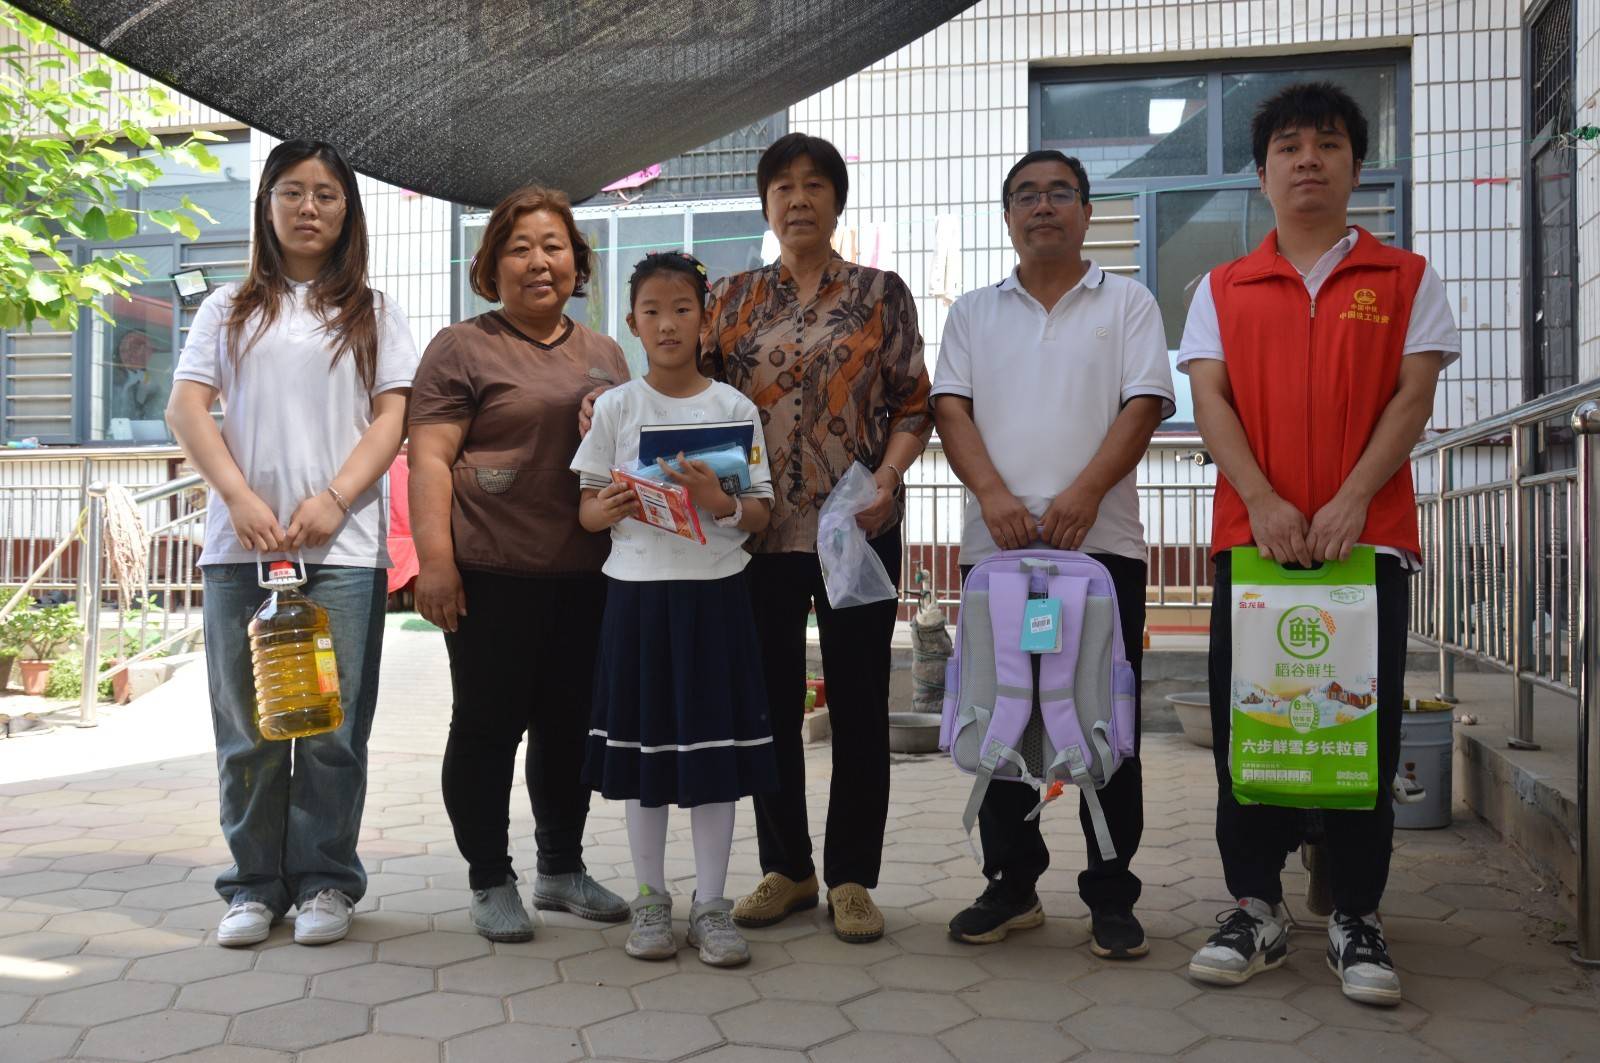 魏县全域水网地表水灌溉项目部与魏县野胡拐蔡小庄创新小学老师们一起